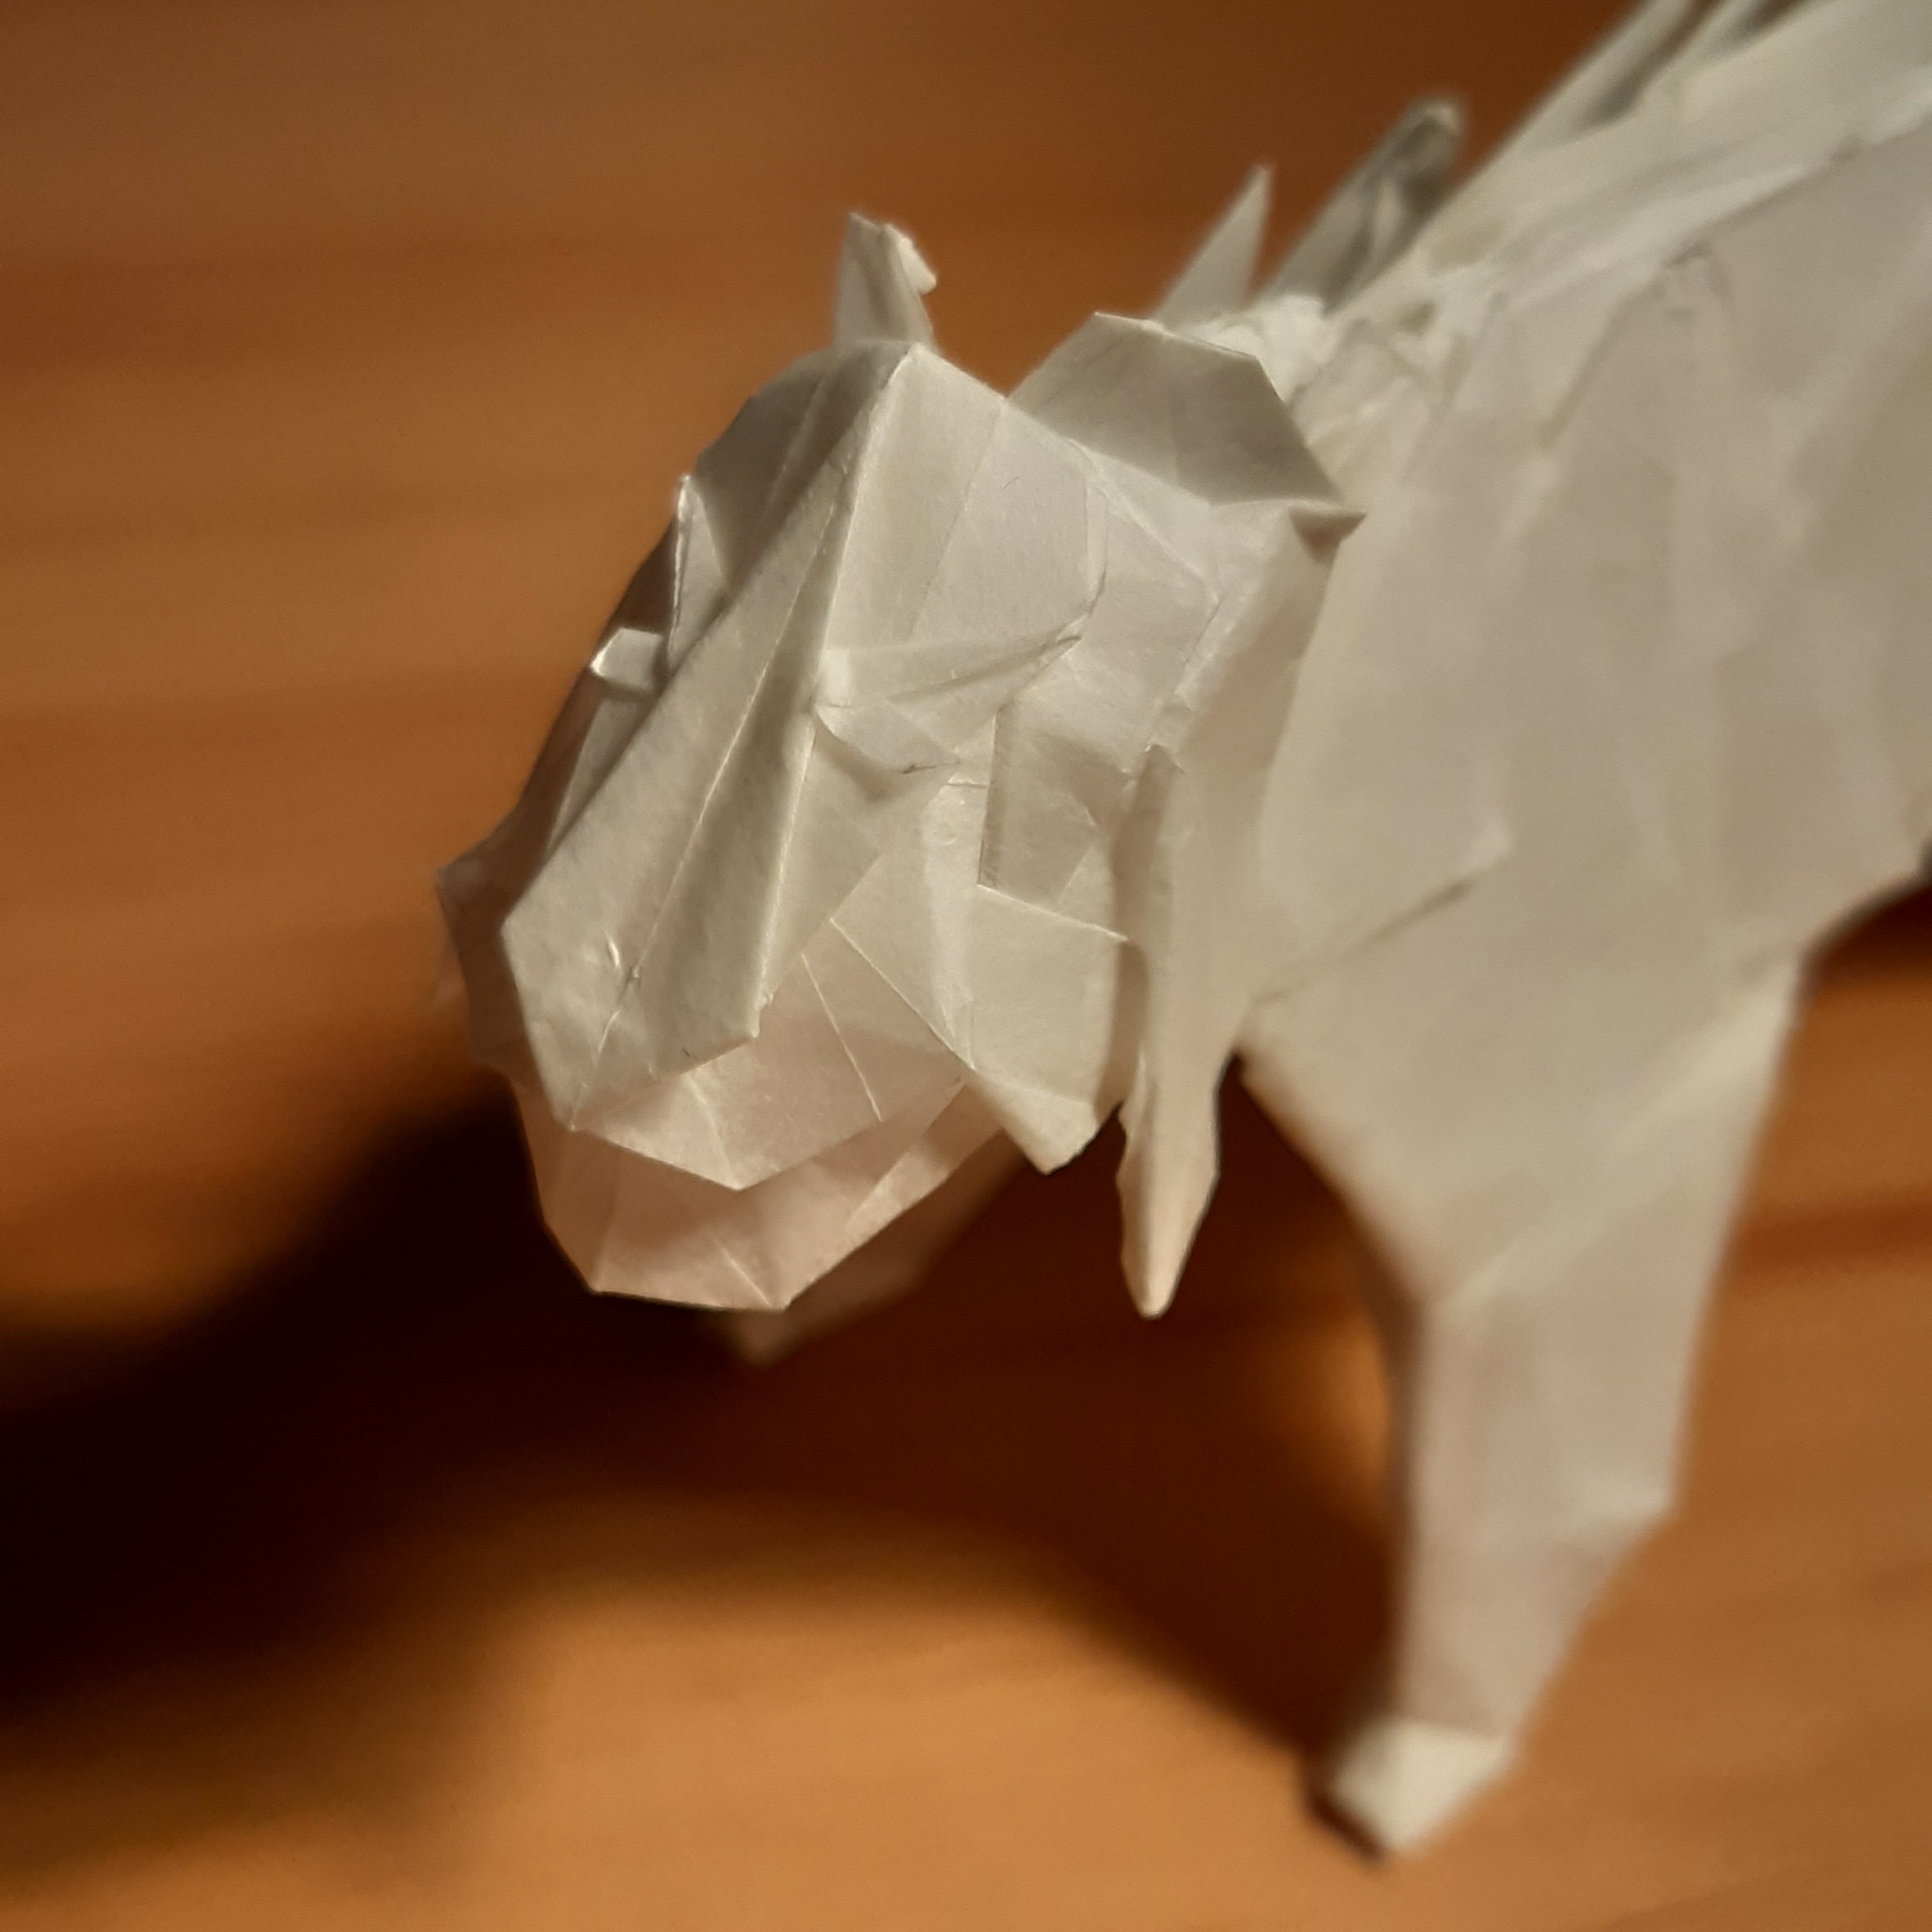 Оригами Тигр из бумаги | DIY Новый год | Origami Paper Tiger